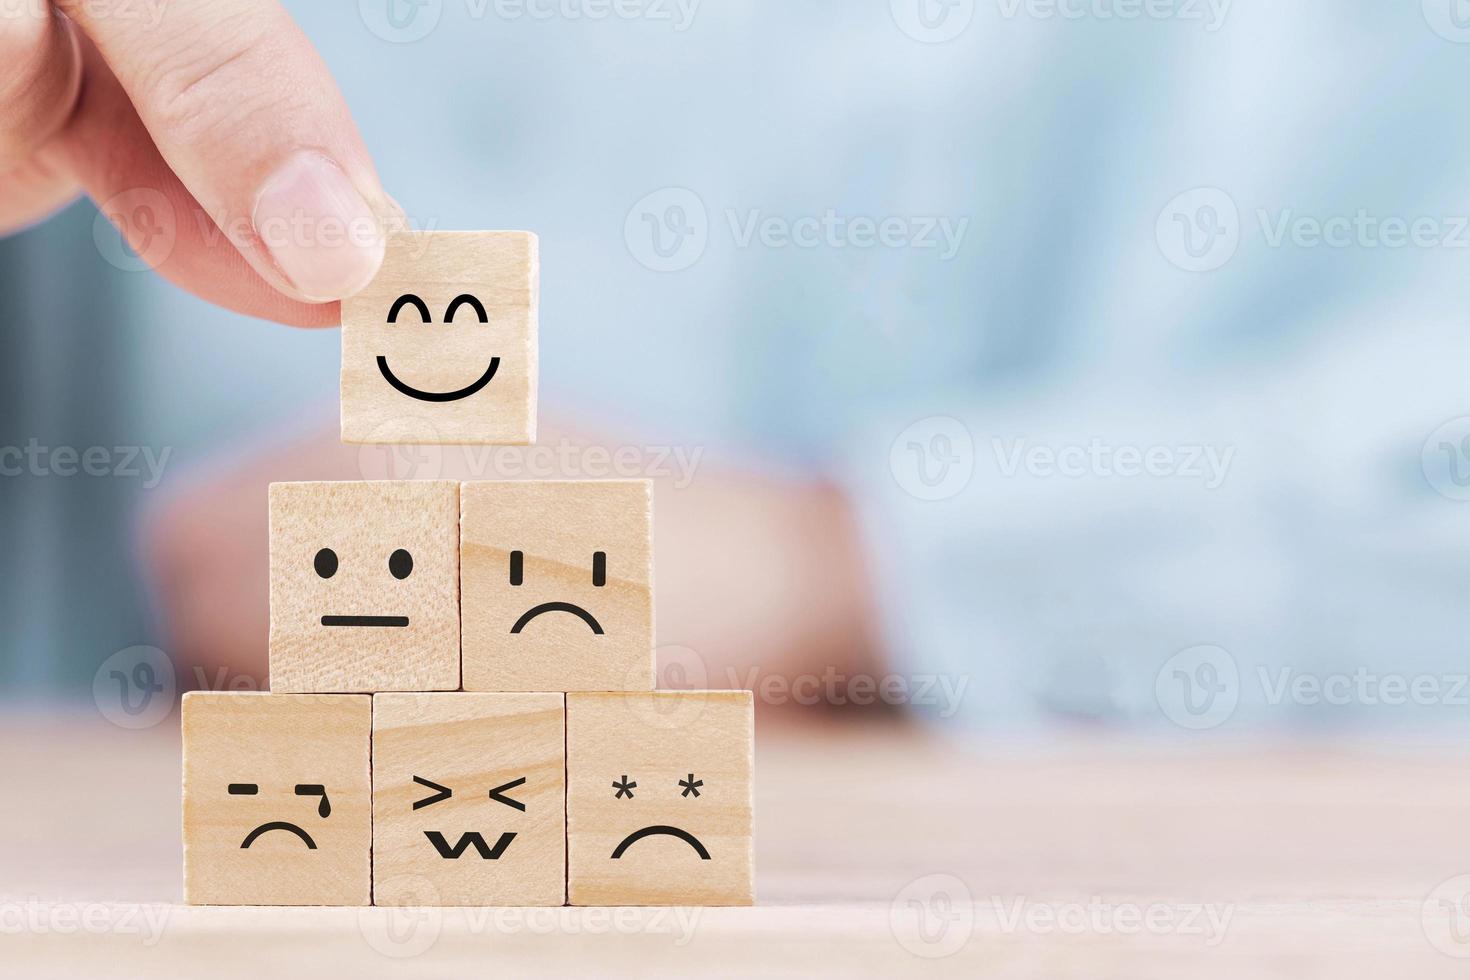 el hombre de negocios elige un icono de emoticono de sonrisa que se enfrenta a un símbolo feliz en un bloque de madera, servicios y concepto de encuesta de satisfacción del cliente foto